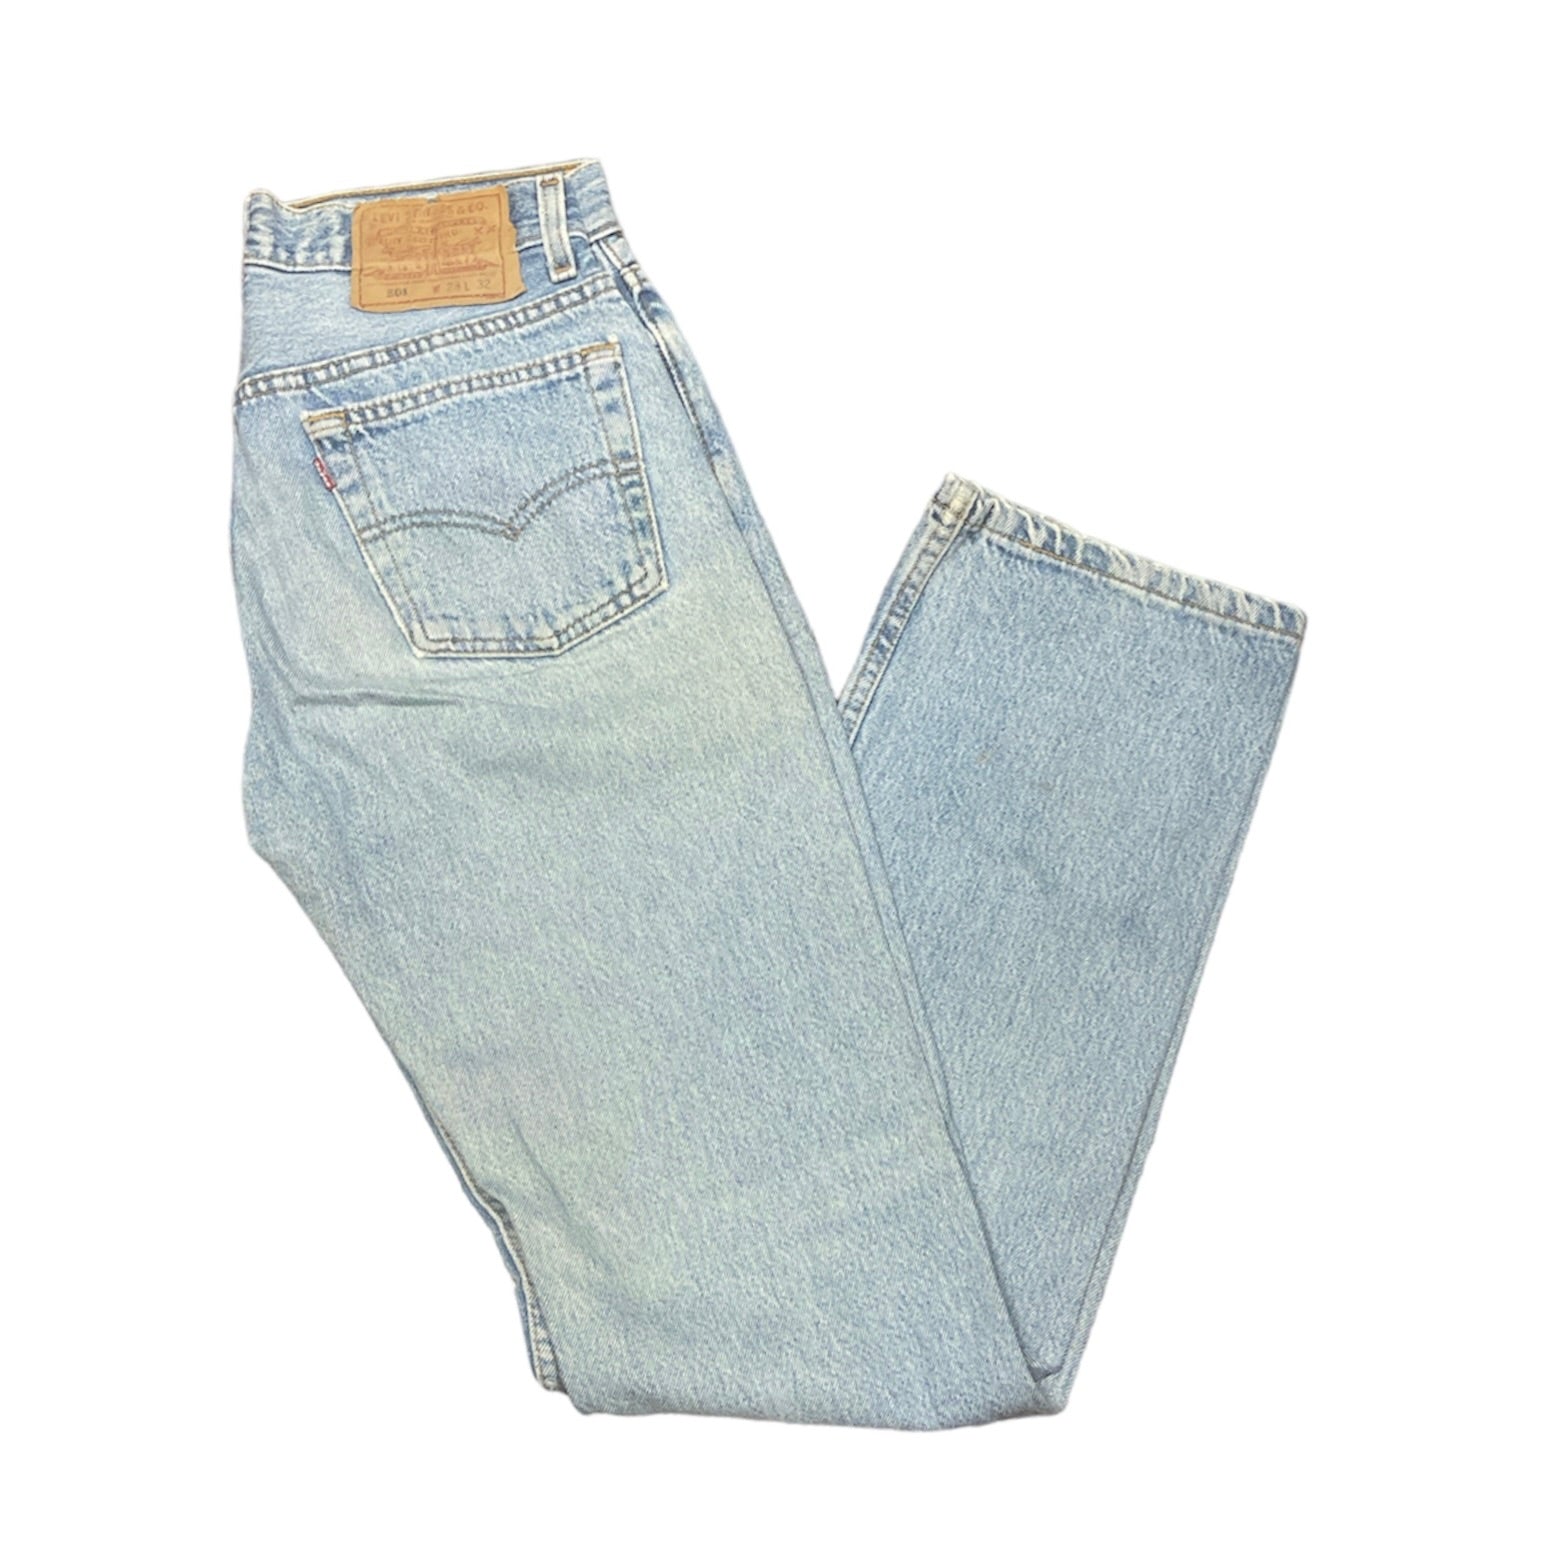 Vintage Levis 501 Blue Jeans (W28/L32)